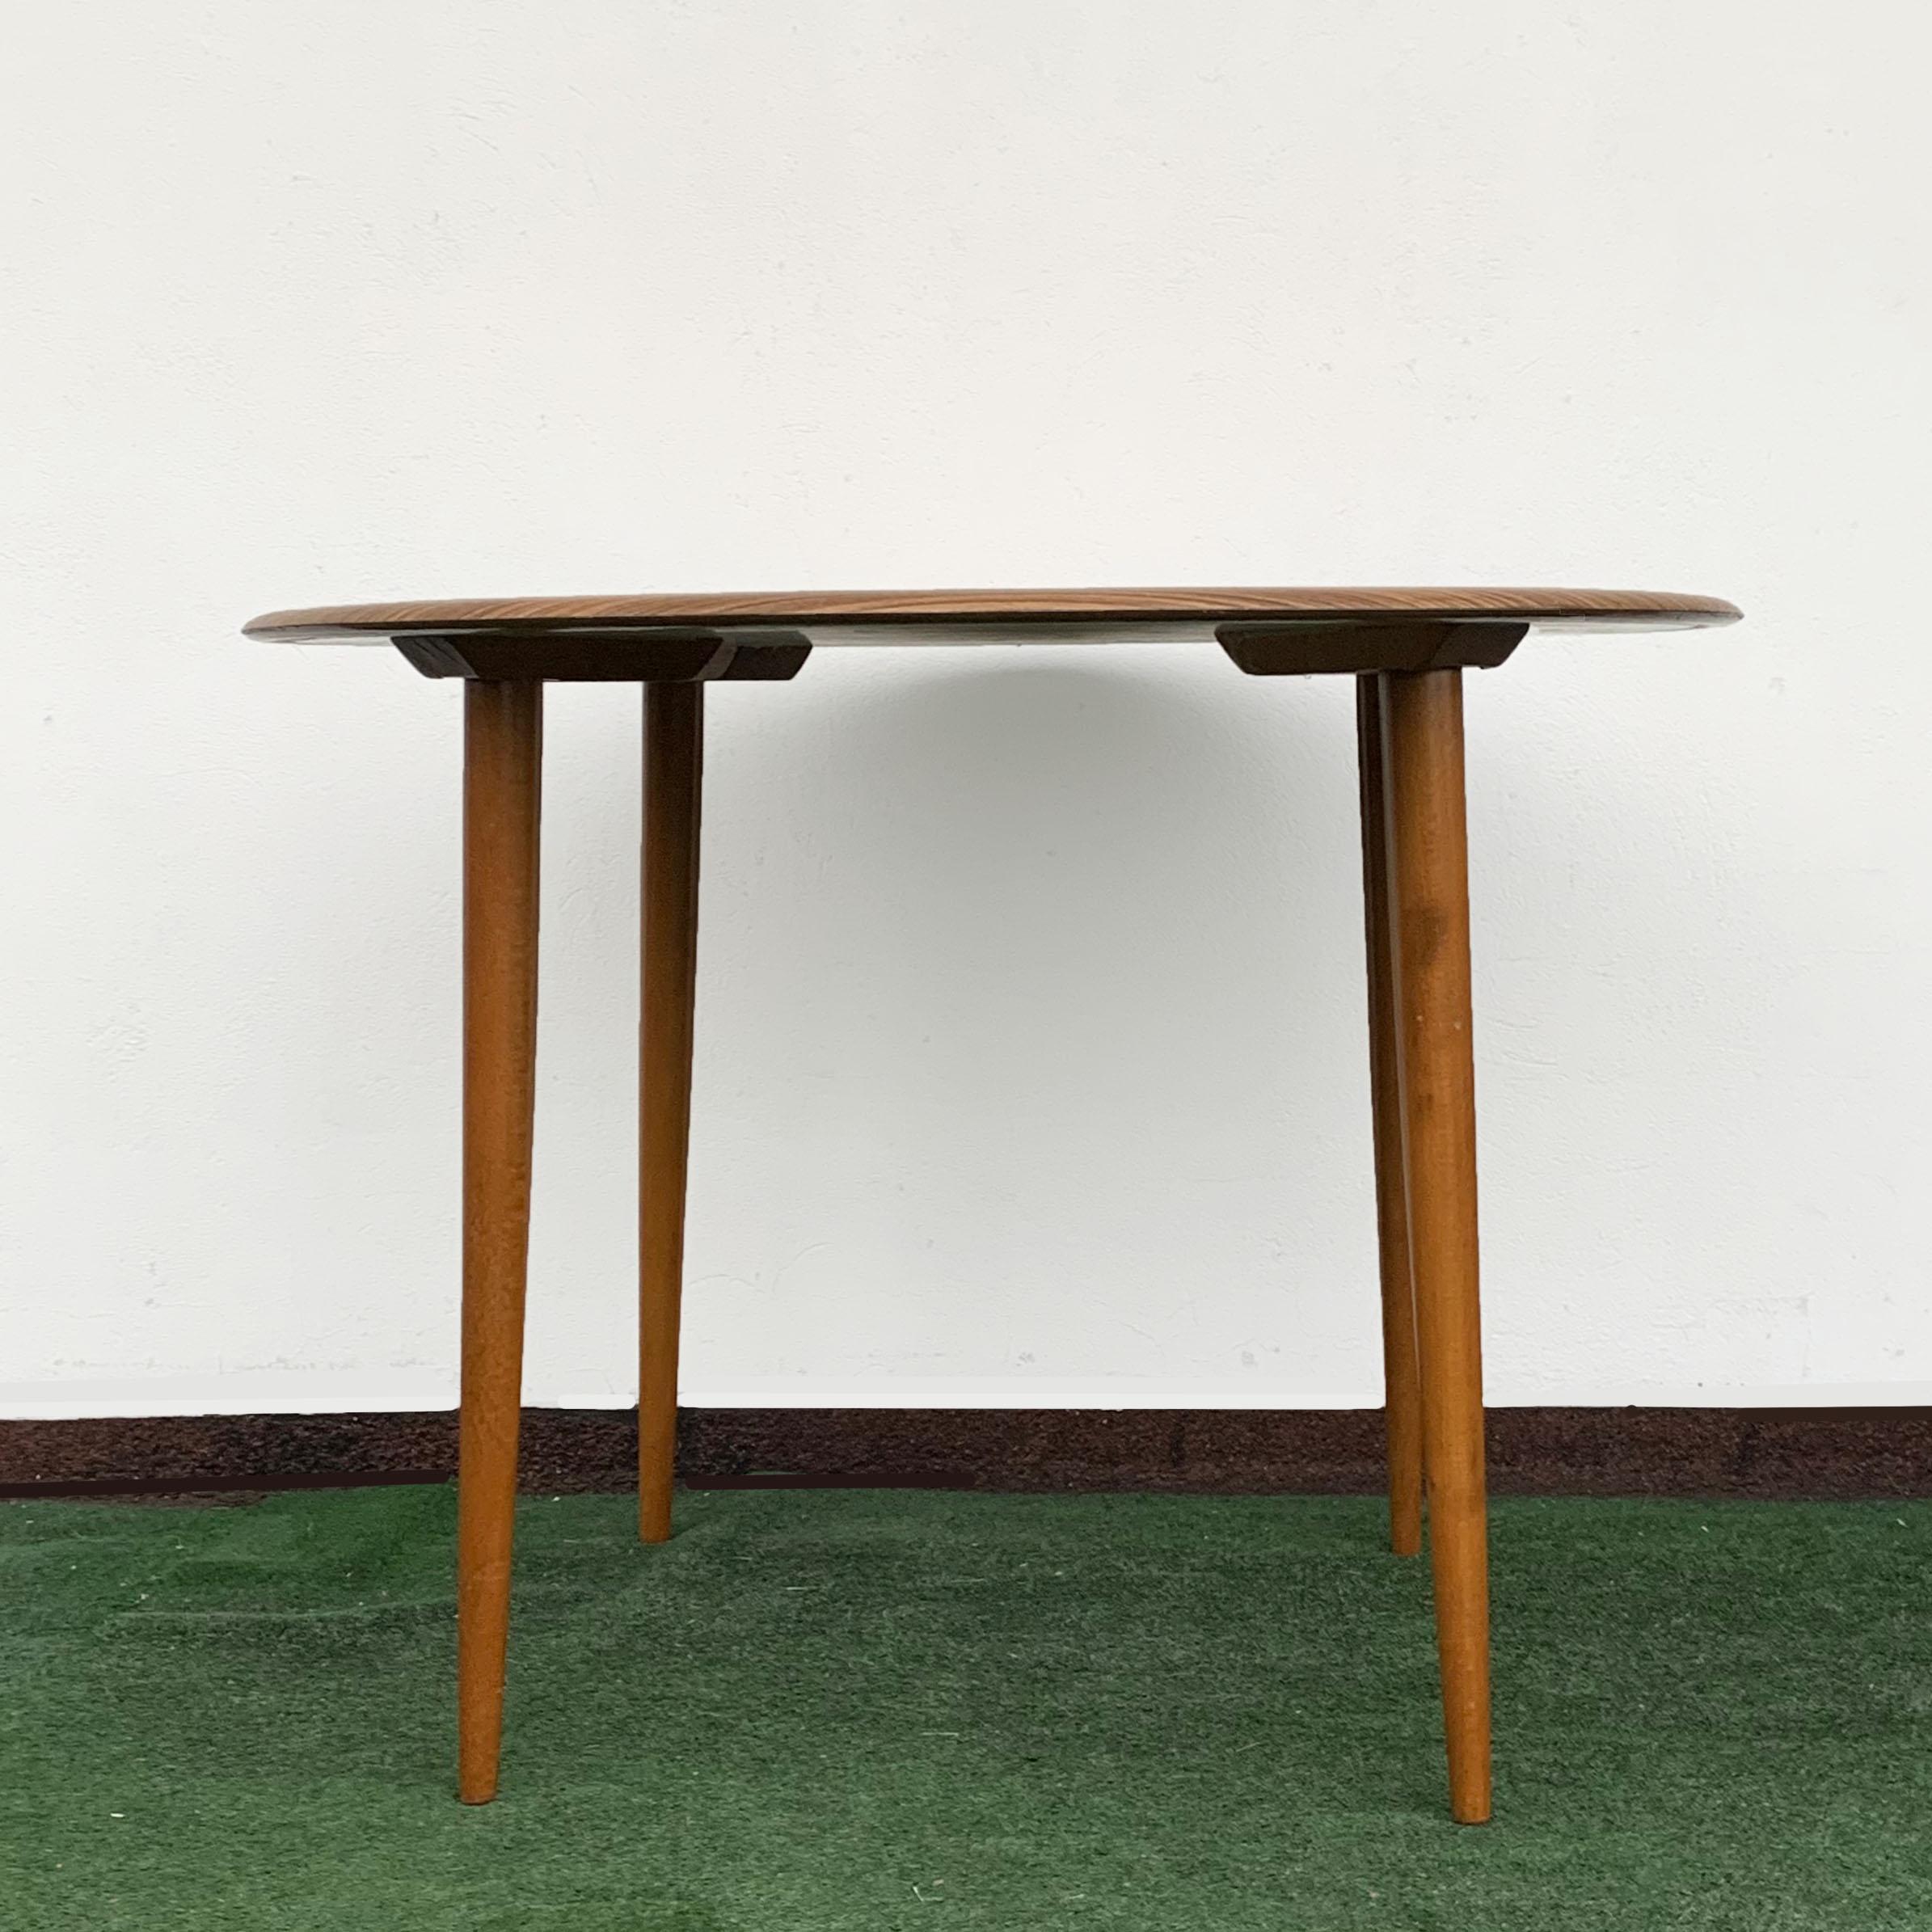 Table ronde d'Opal Kleinmöbel. Vintage danois. Un article allemand de conception classique des années 1960.

Tous les pieds sont amovibles, ce qui rend cette table très spéciale facile à déplacer ou à ranger. 

L'article est vendu avec